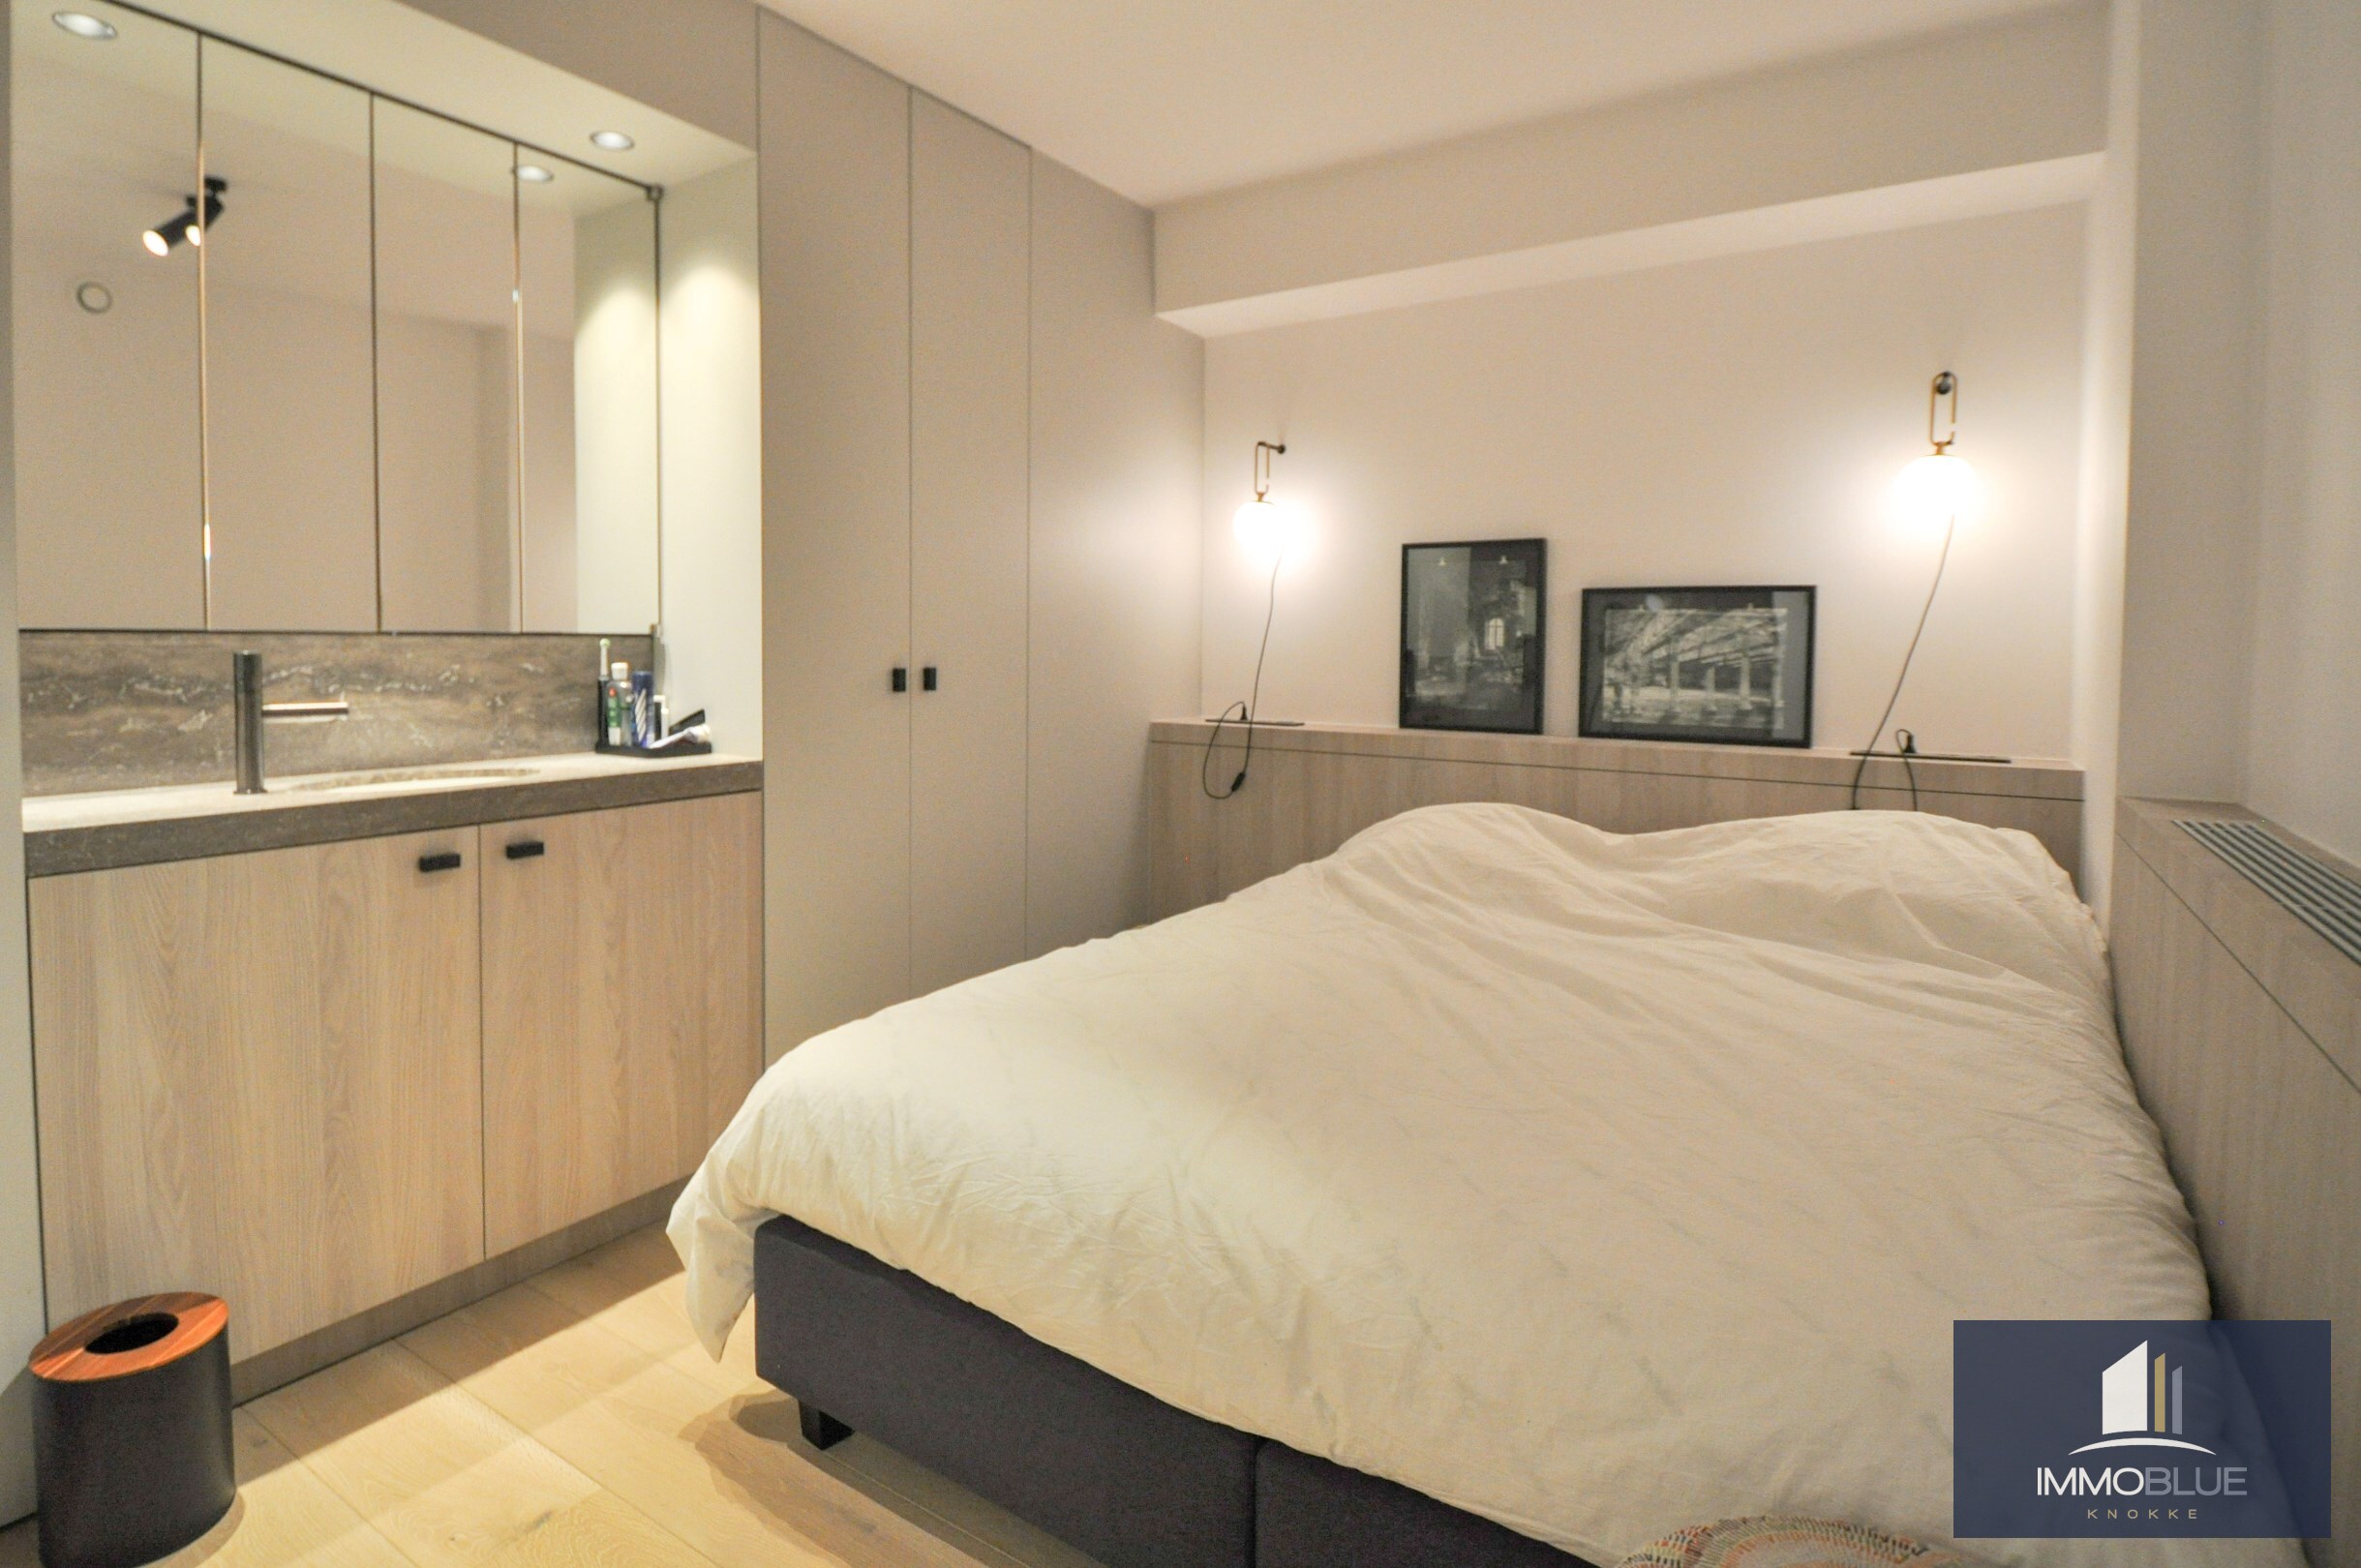 Subliem volledig gerenoveerd appartement met mooi zijdelings zeezicht gelegen in het Zoute. 